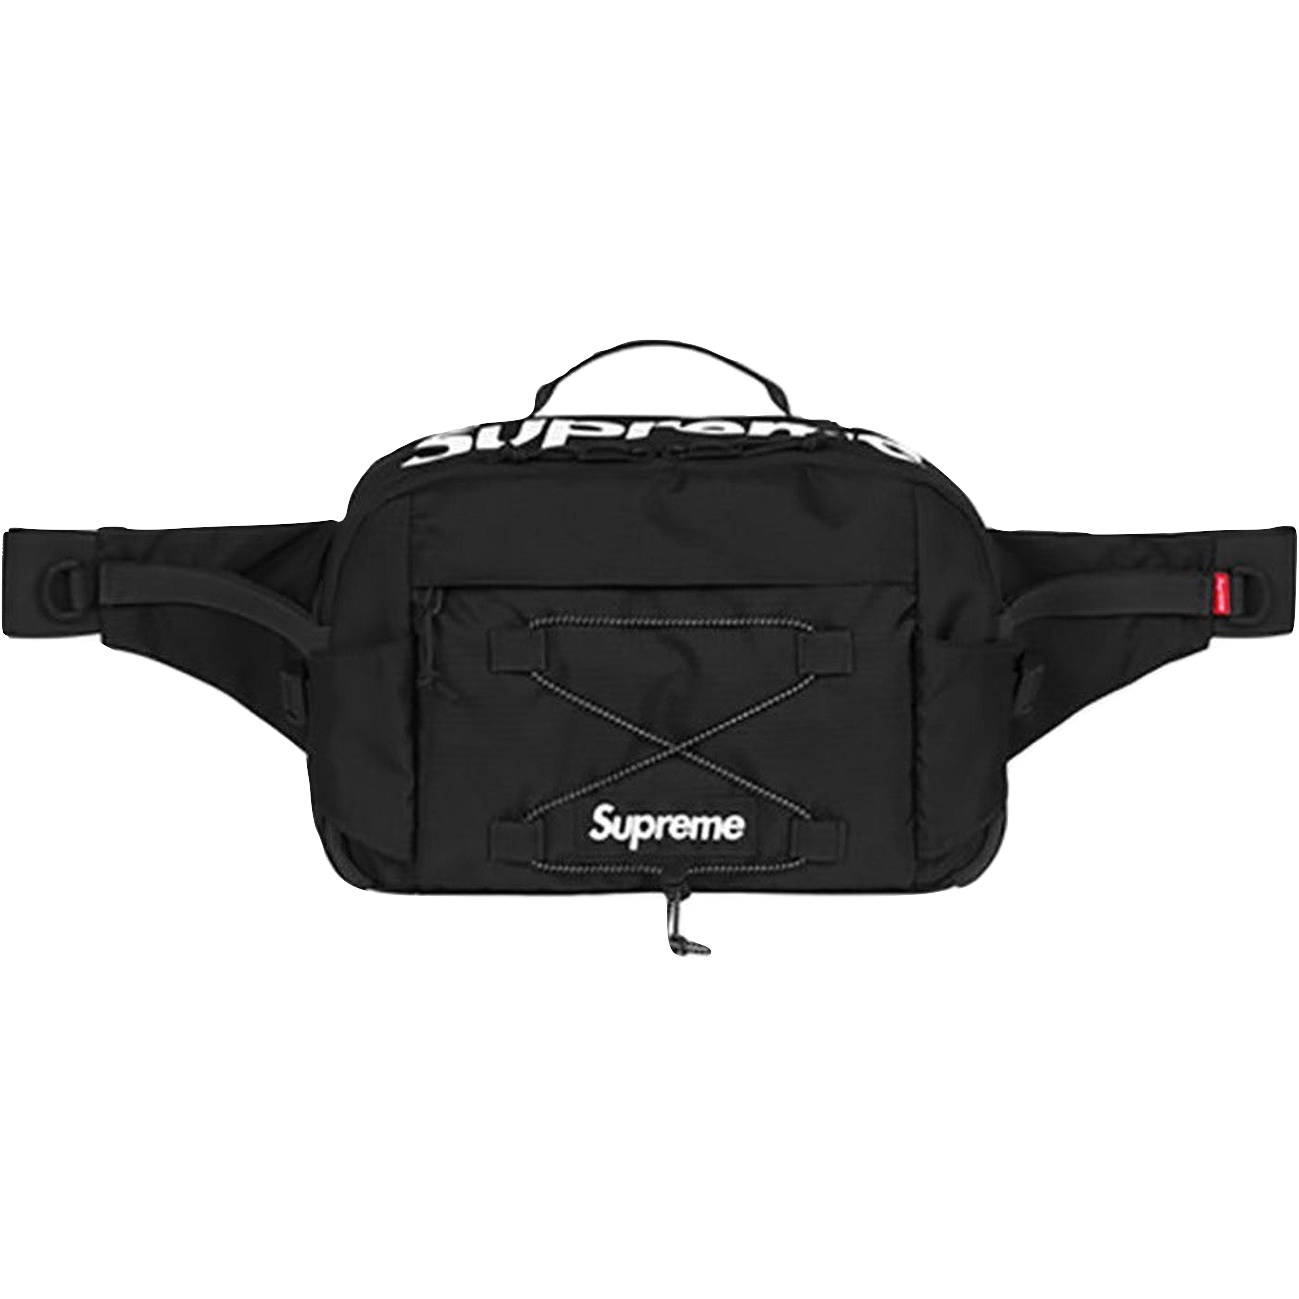 Supreme Waist Bag SS17 - Black - Used